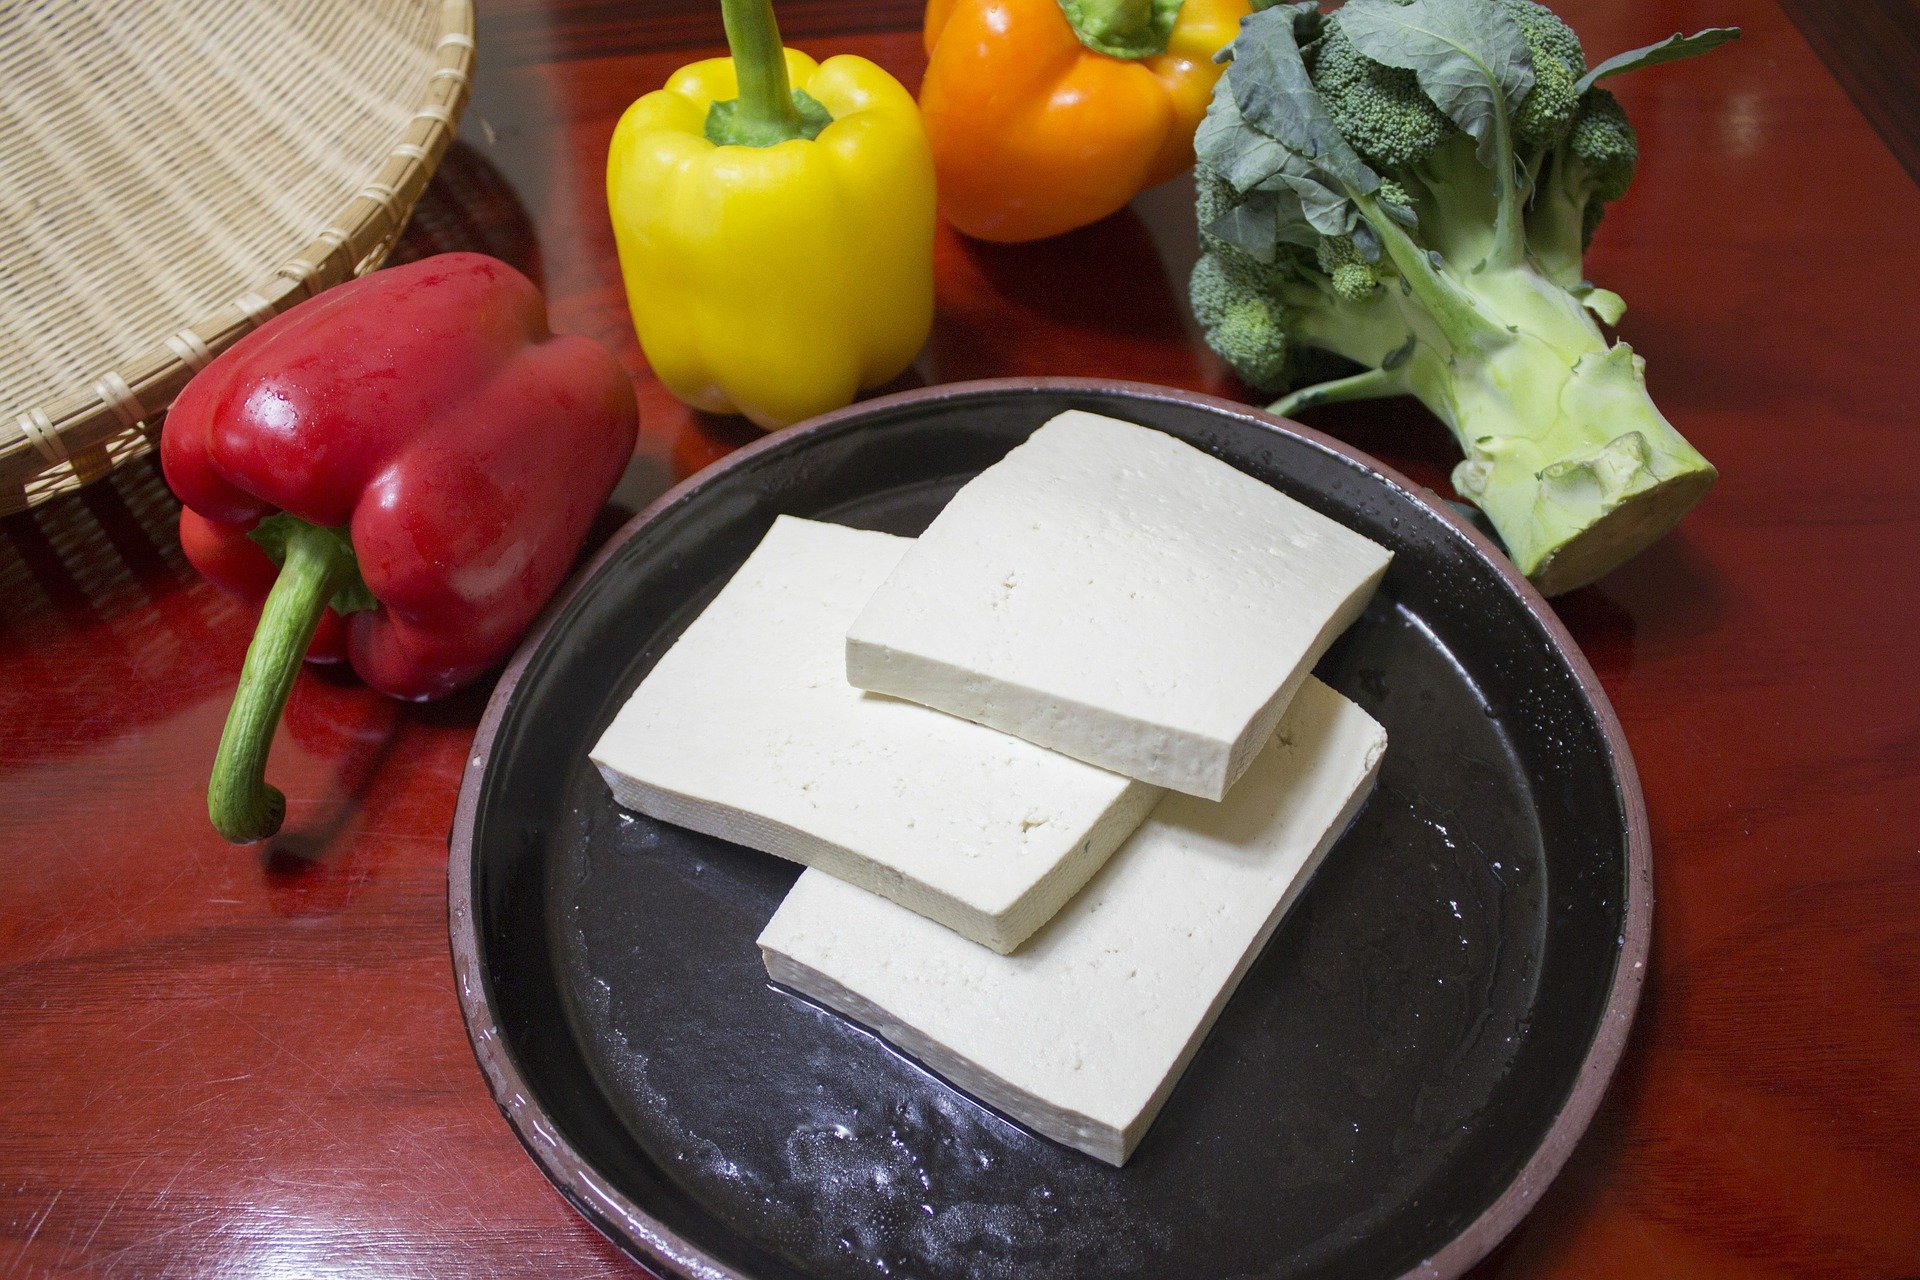 slice the tofu 597229 1920.jpg?resize=1200,630 - La fabrication du tofu cause un problème écologique et sanitaire